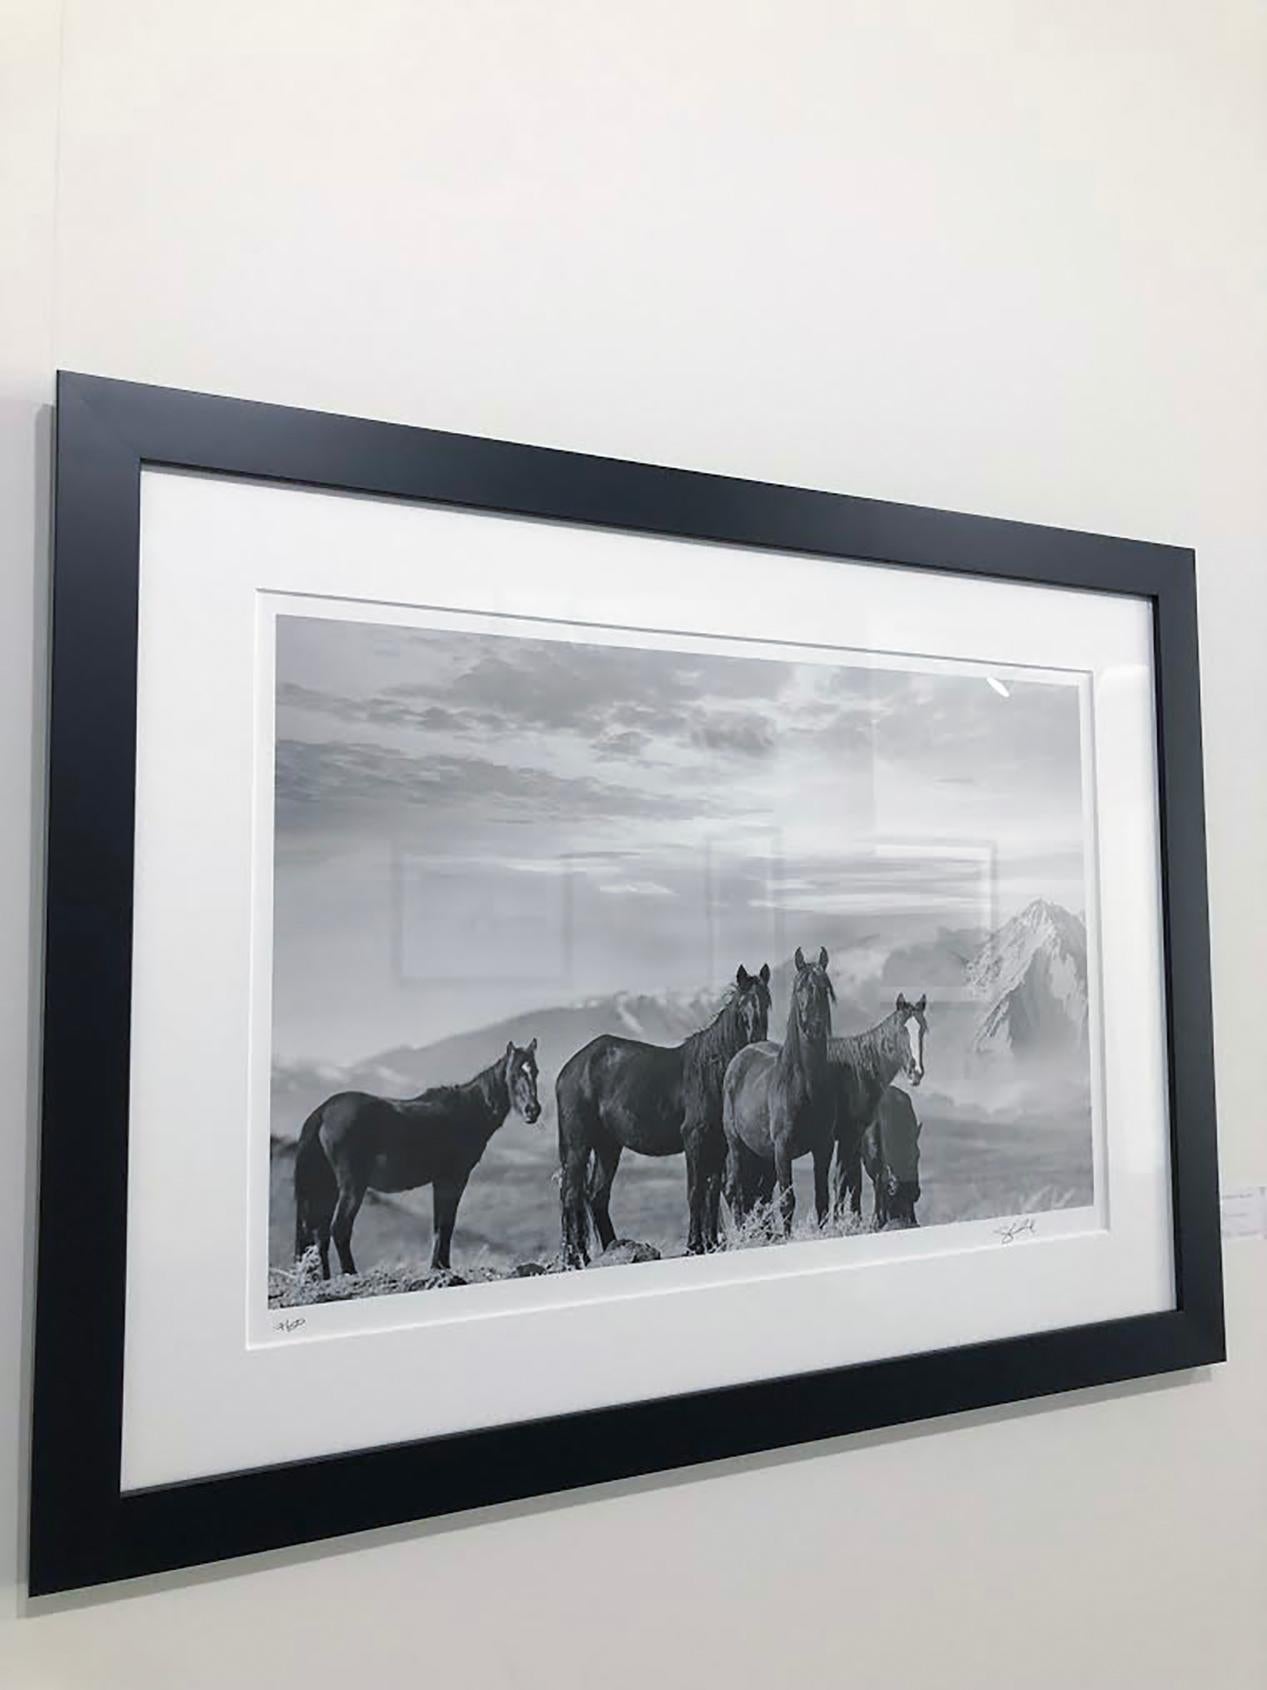 High Sierra Mustangs - 40x30 Schwarz-Weiß-Fotografie von Wildpferden  – Photograph von Shane Russeck